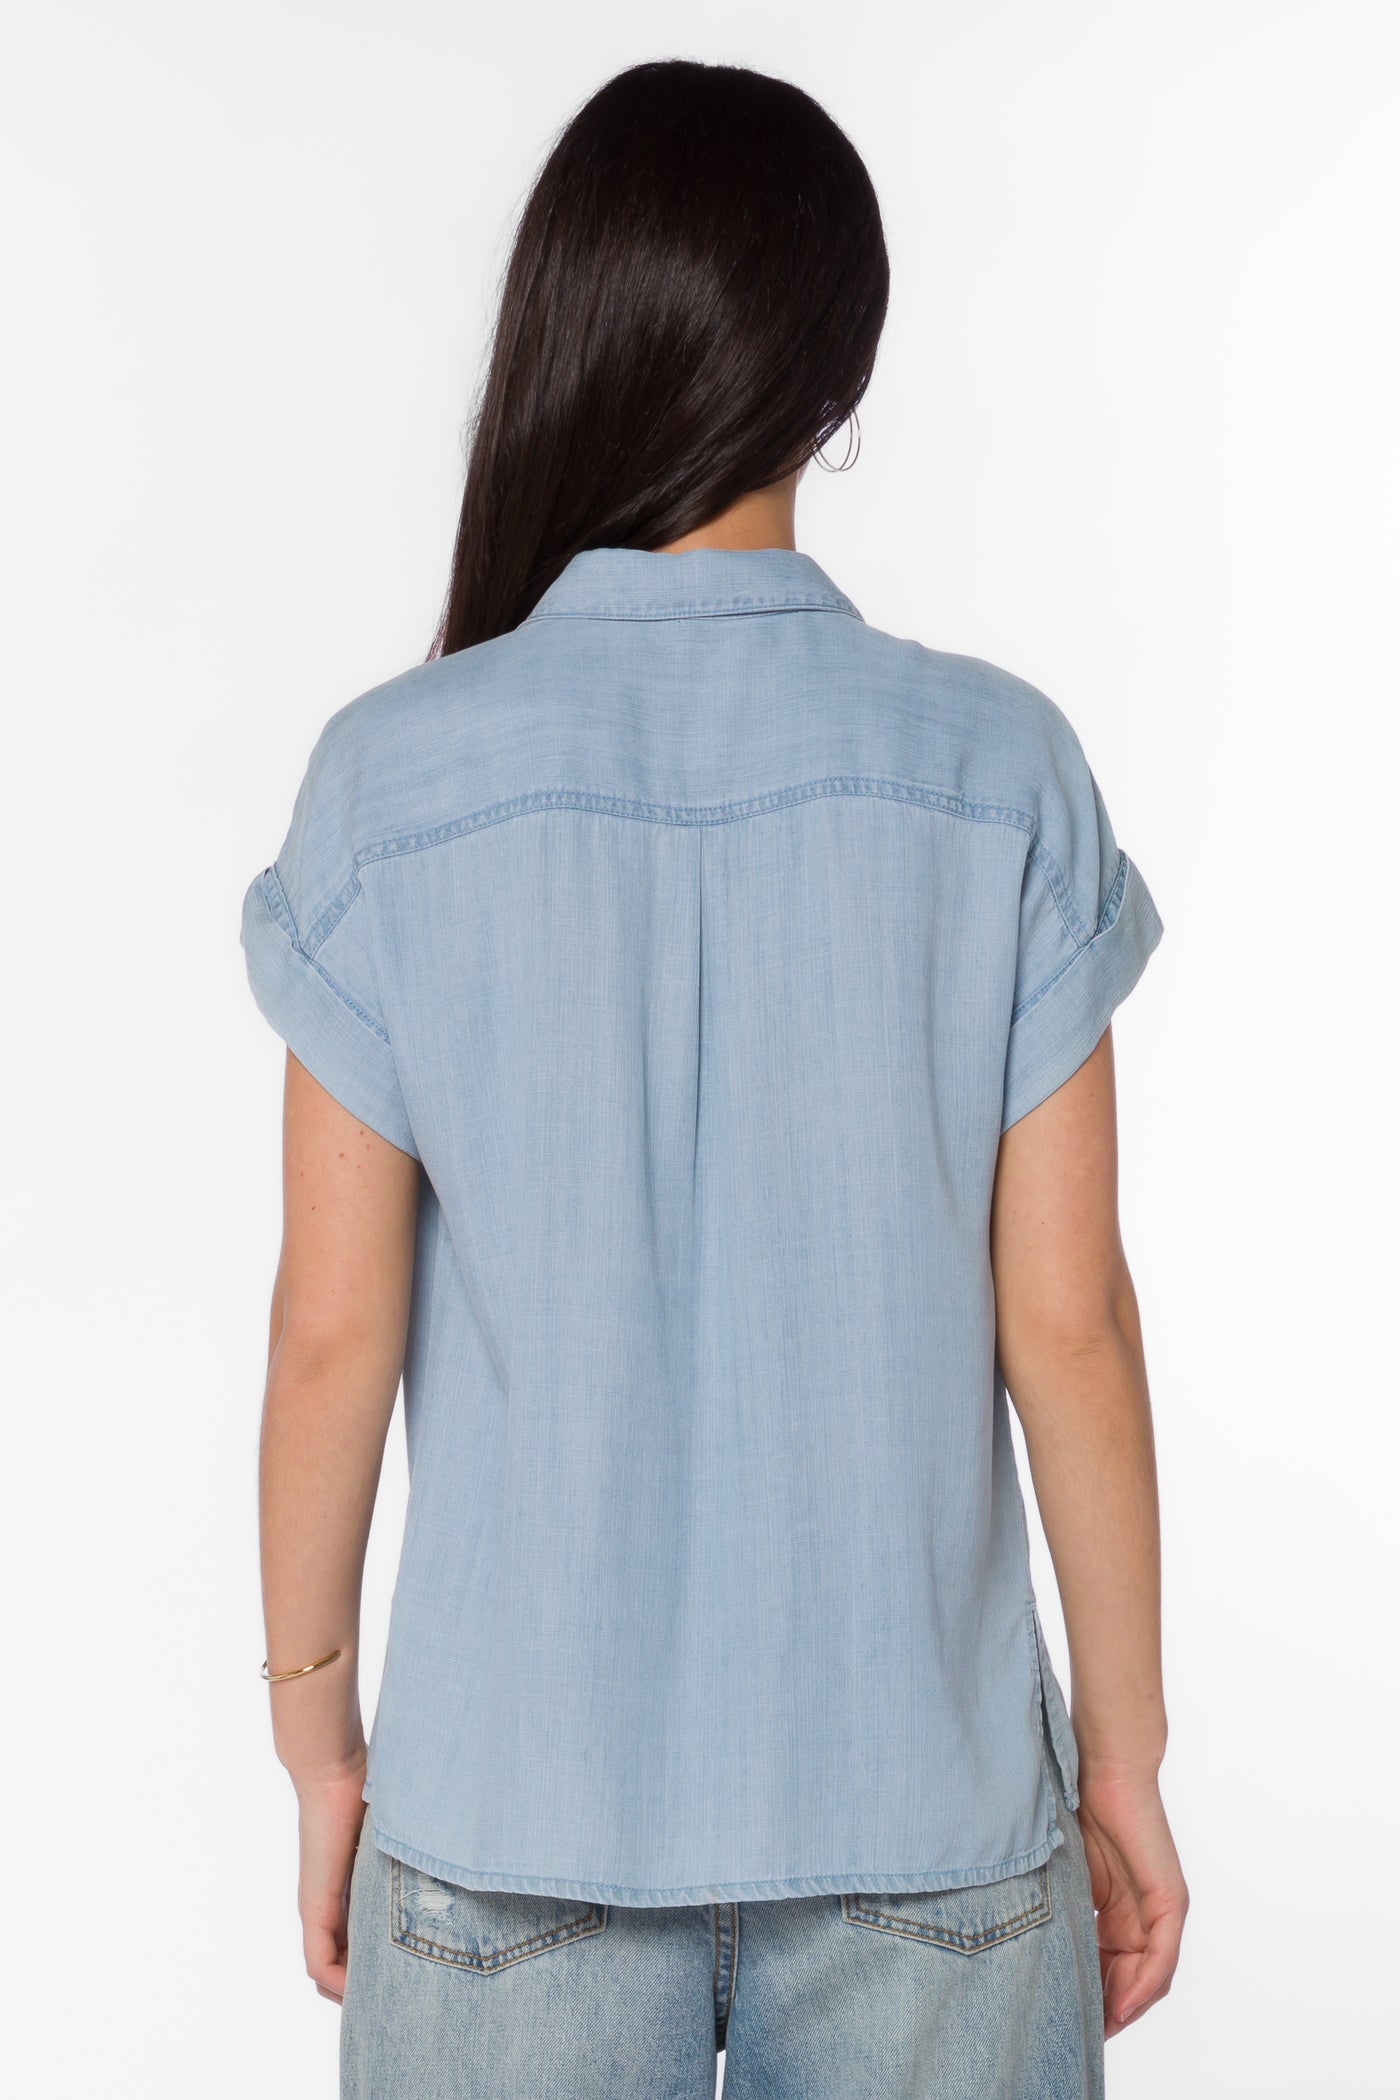 Edison Greyson Blue Shirt - Tops - Velvet Heart Clothing